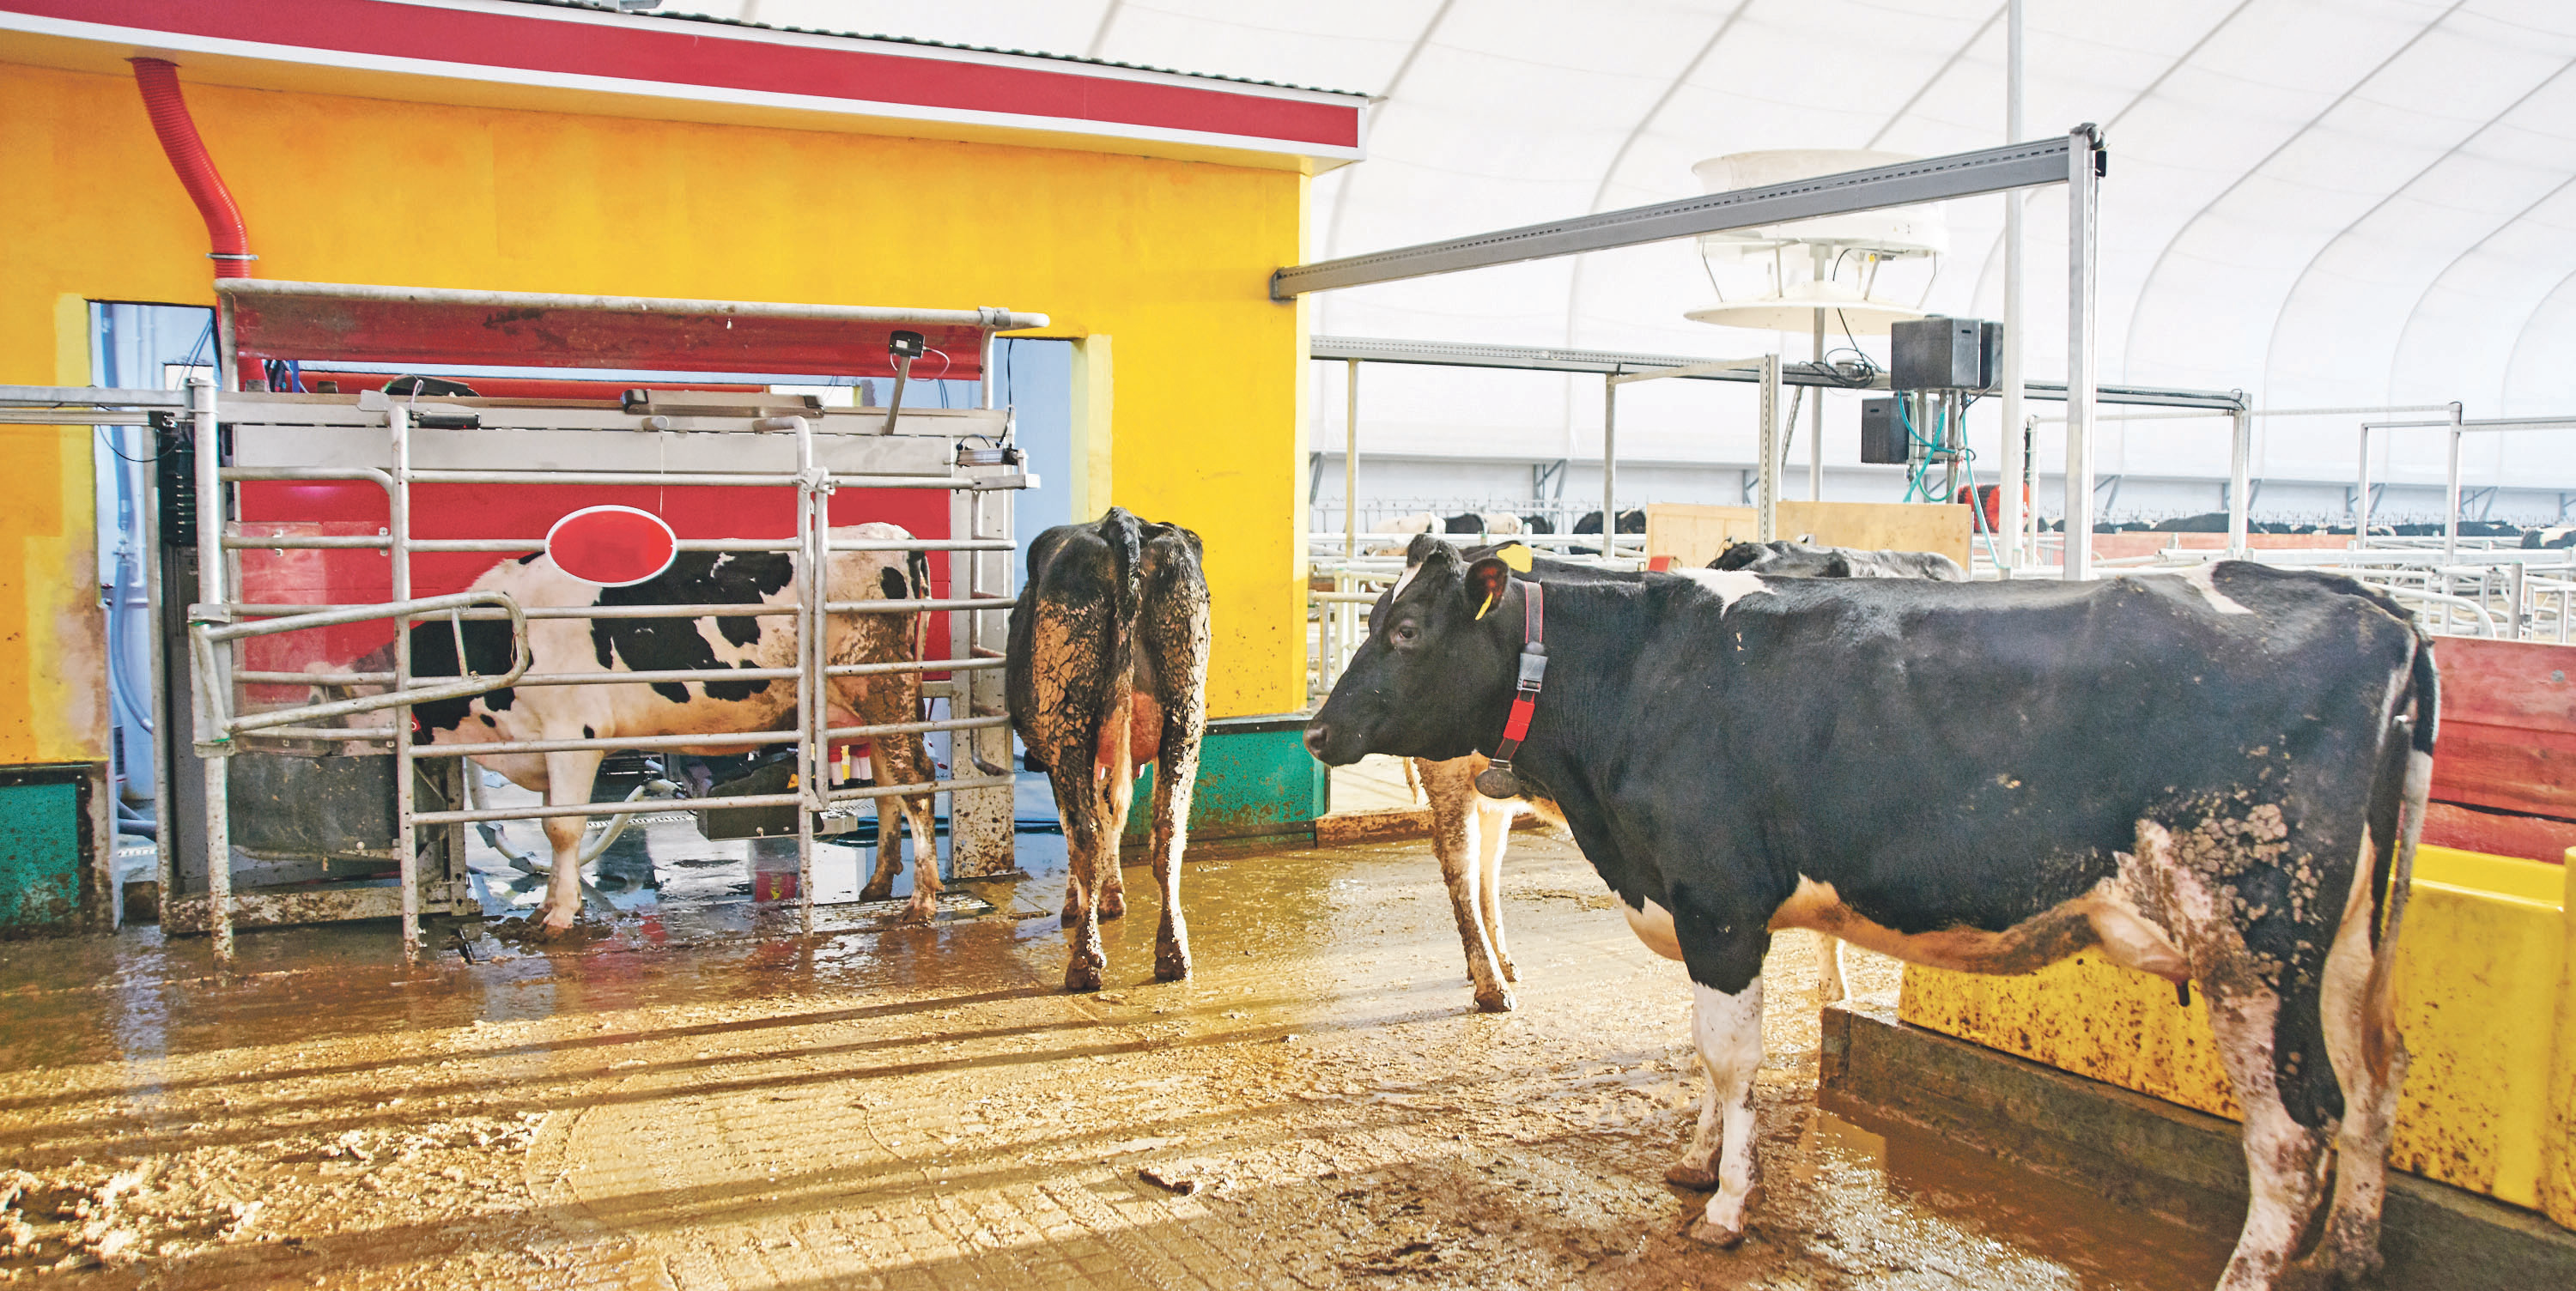 Schön eine nach der anderen: In Reih' und Glied stehen die Kühe und warten geduldig darauf, von der Maschine gemolken zu werden.  Foto: amixstudio/stock.adobe.com